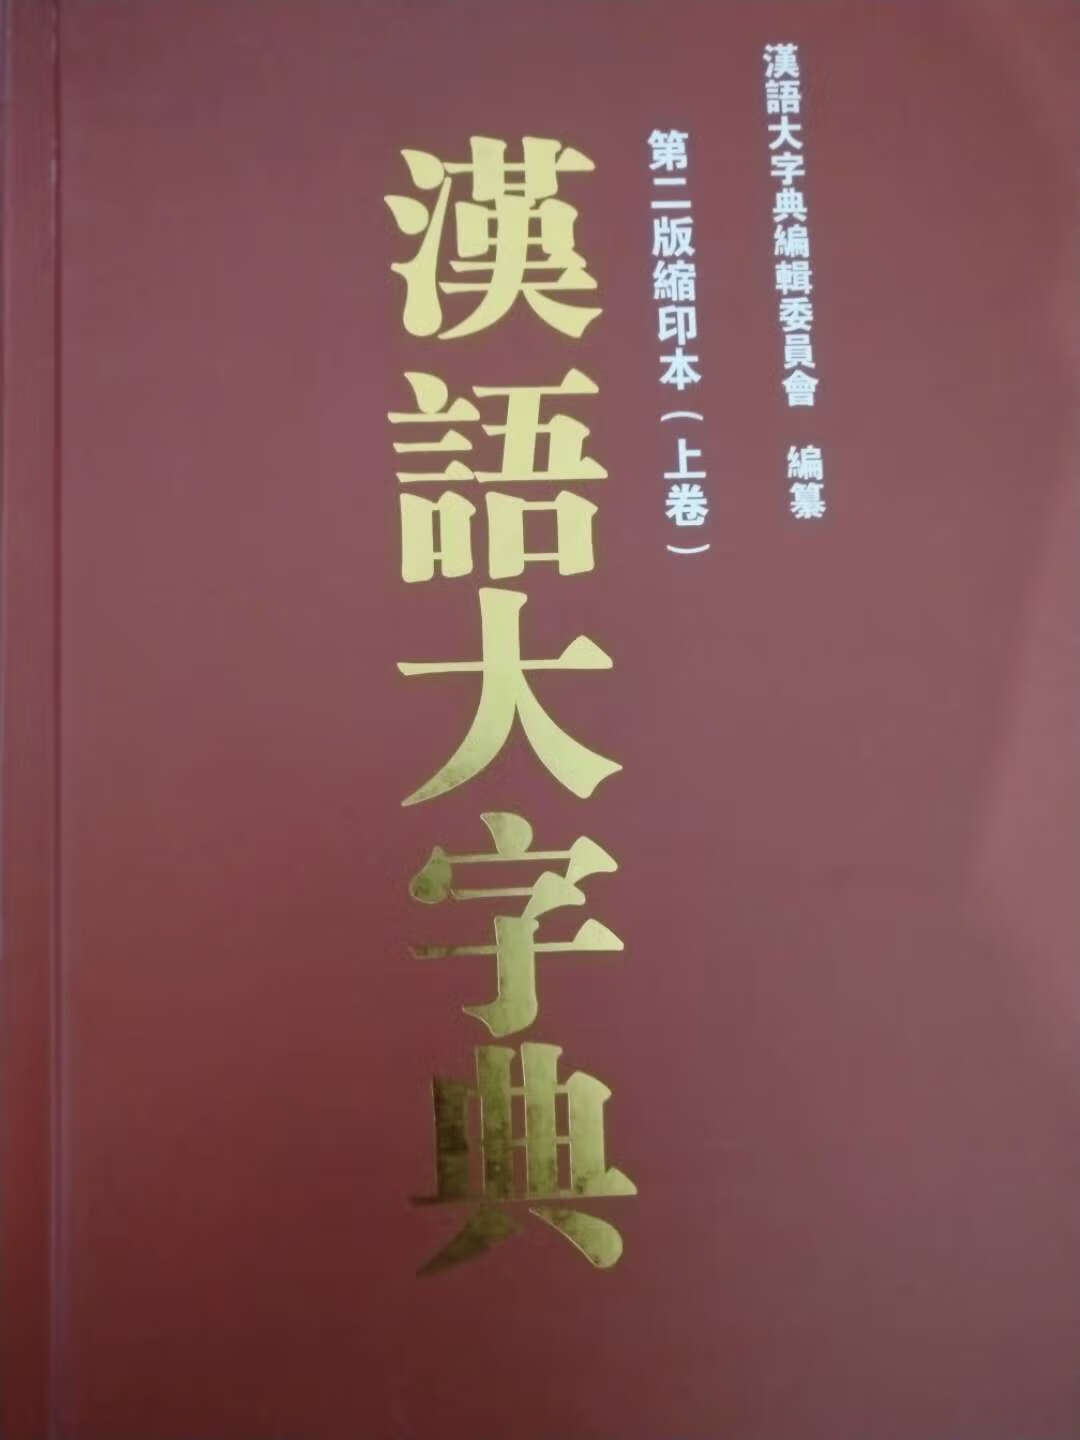 《汉语大字典》是当代的《康熙字典》、是一部包括了《康熙字典、说文解字》等历代文字学精华的盛世巨典！《汉语大字典》还收集了历代出土文物上的古汉字，是中国现在最好、最权威的、最精良的字典！和《辞海、辞源、汉语大词典》一起、是当代最权威的四大汉语巨著。与《辞源》等一起放在案头、也可以装装逼了